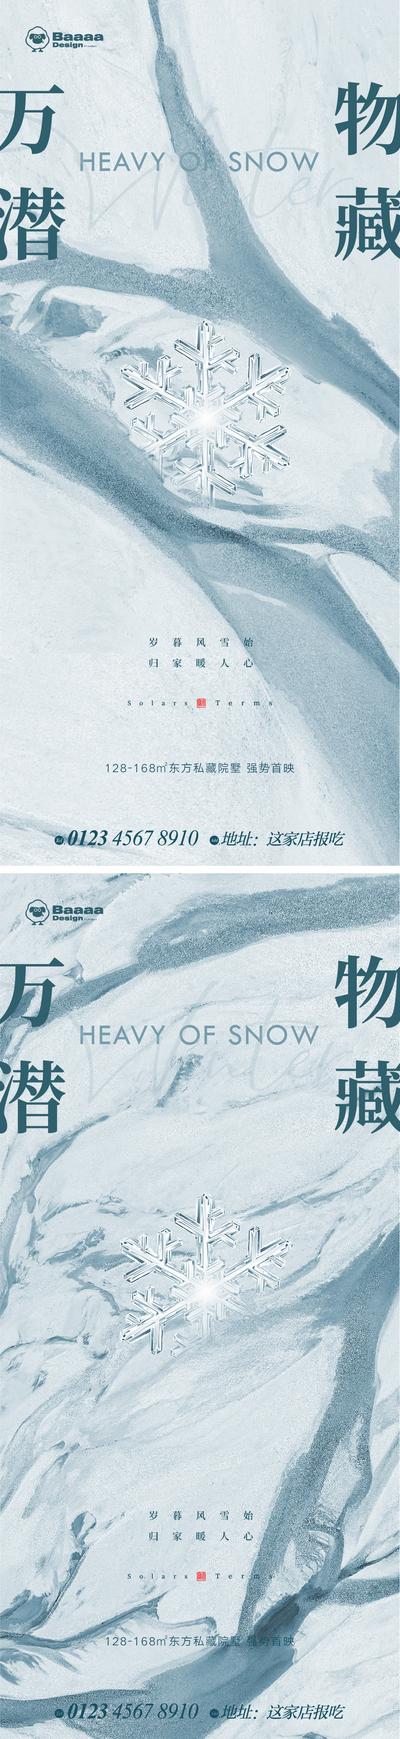 南门网 广告 海报 系列 大雪 小寒 大寒 雪花 肌理 背景 底纹 大气 抽象 纹理 悬念 精致 微信